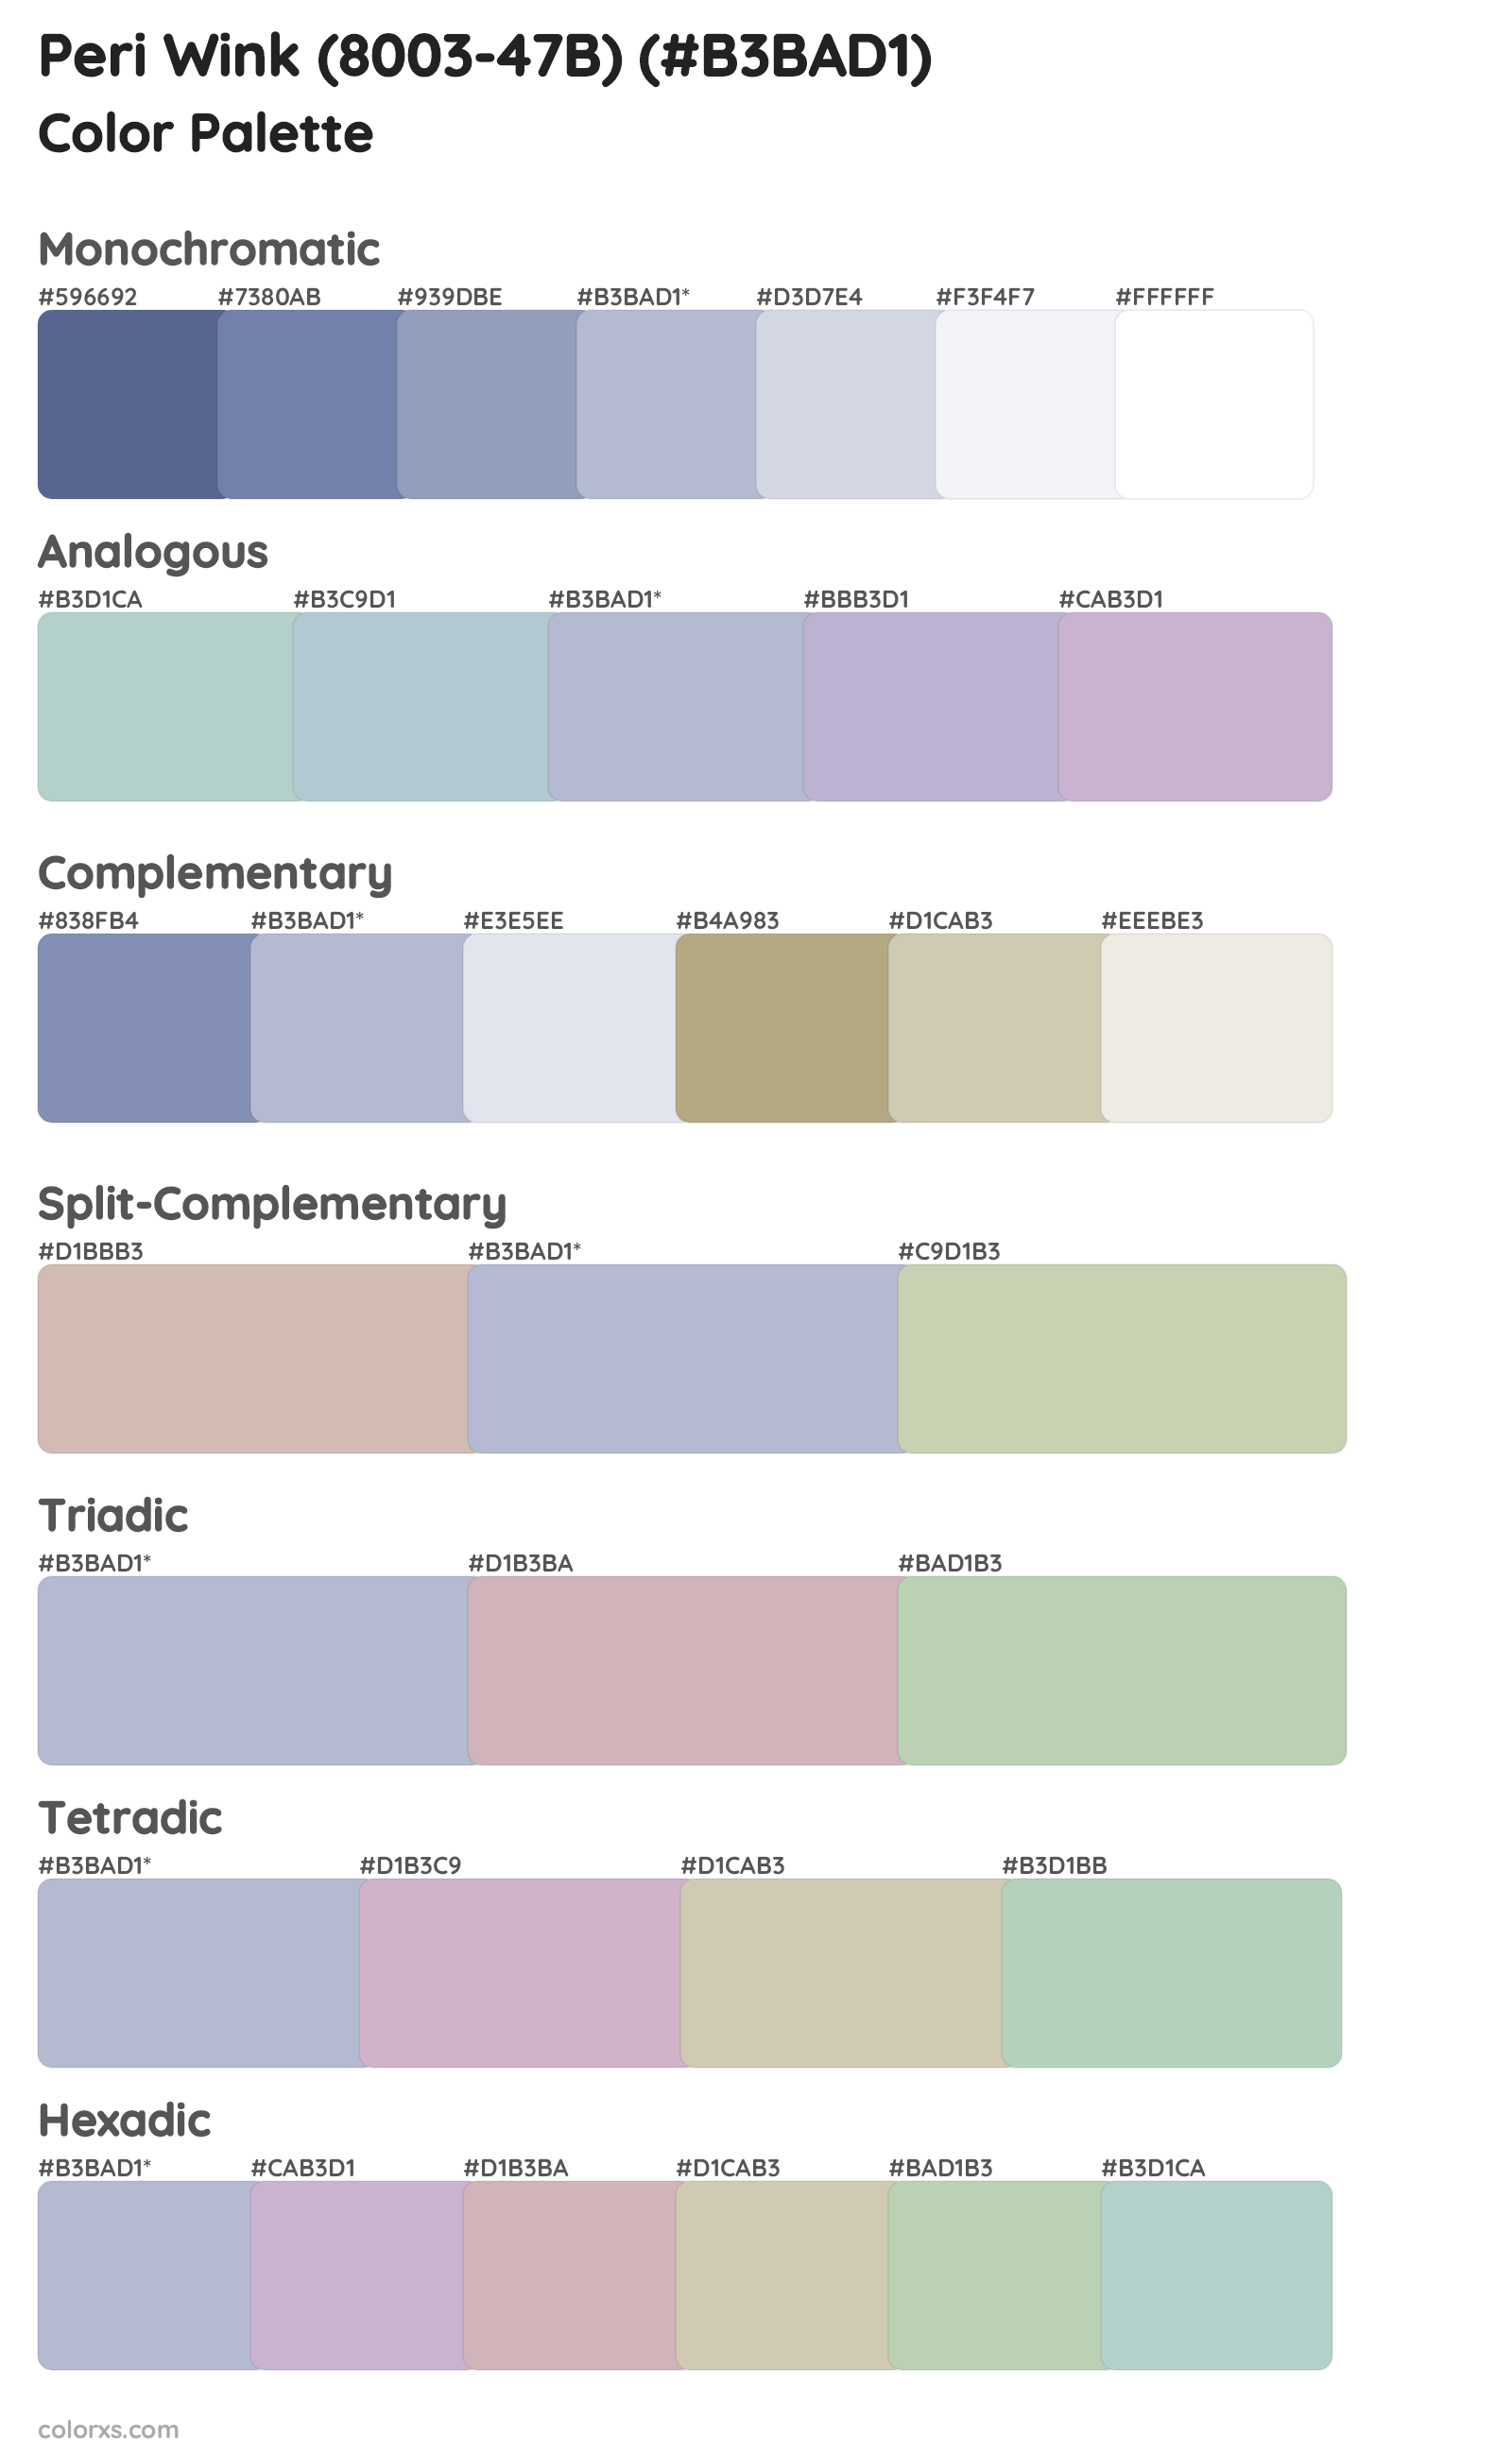 Peri Wink (8003-47B) Color Scheme Palettes